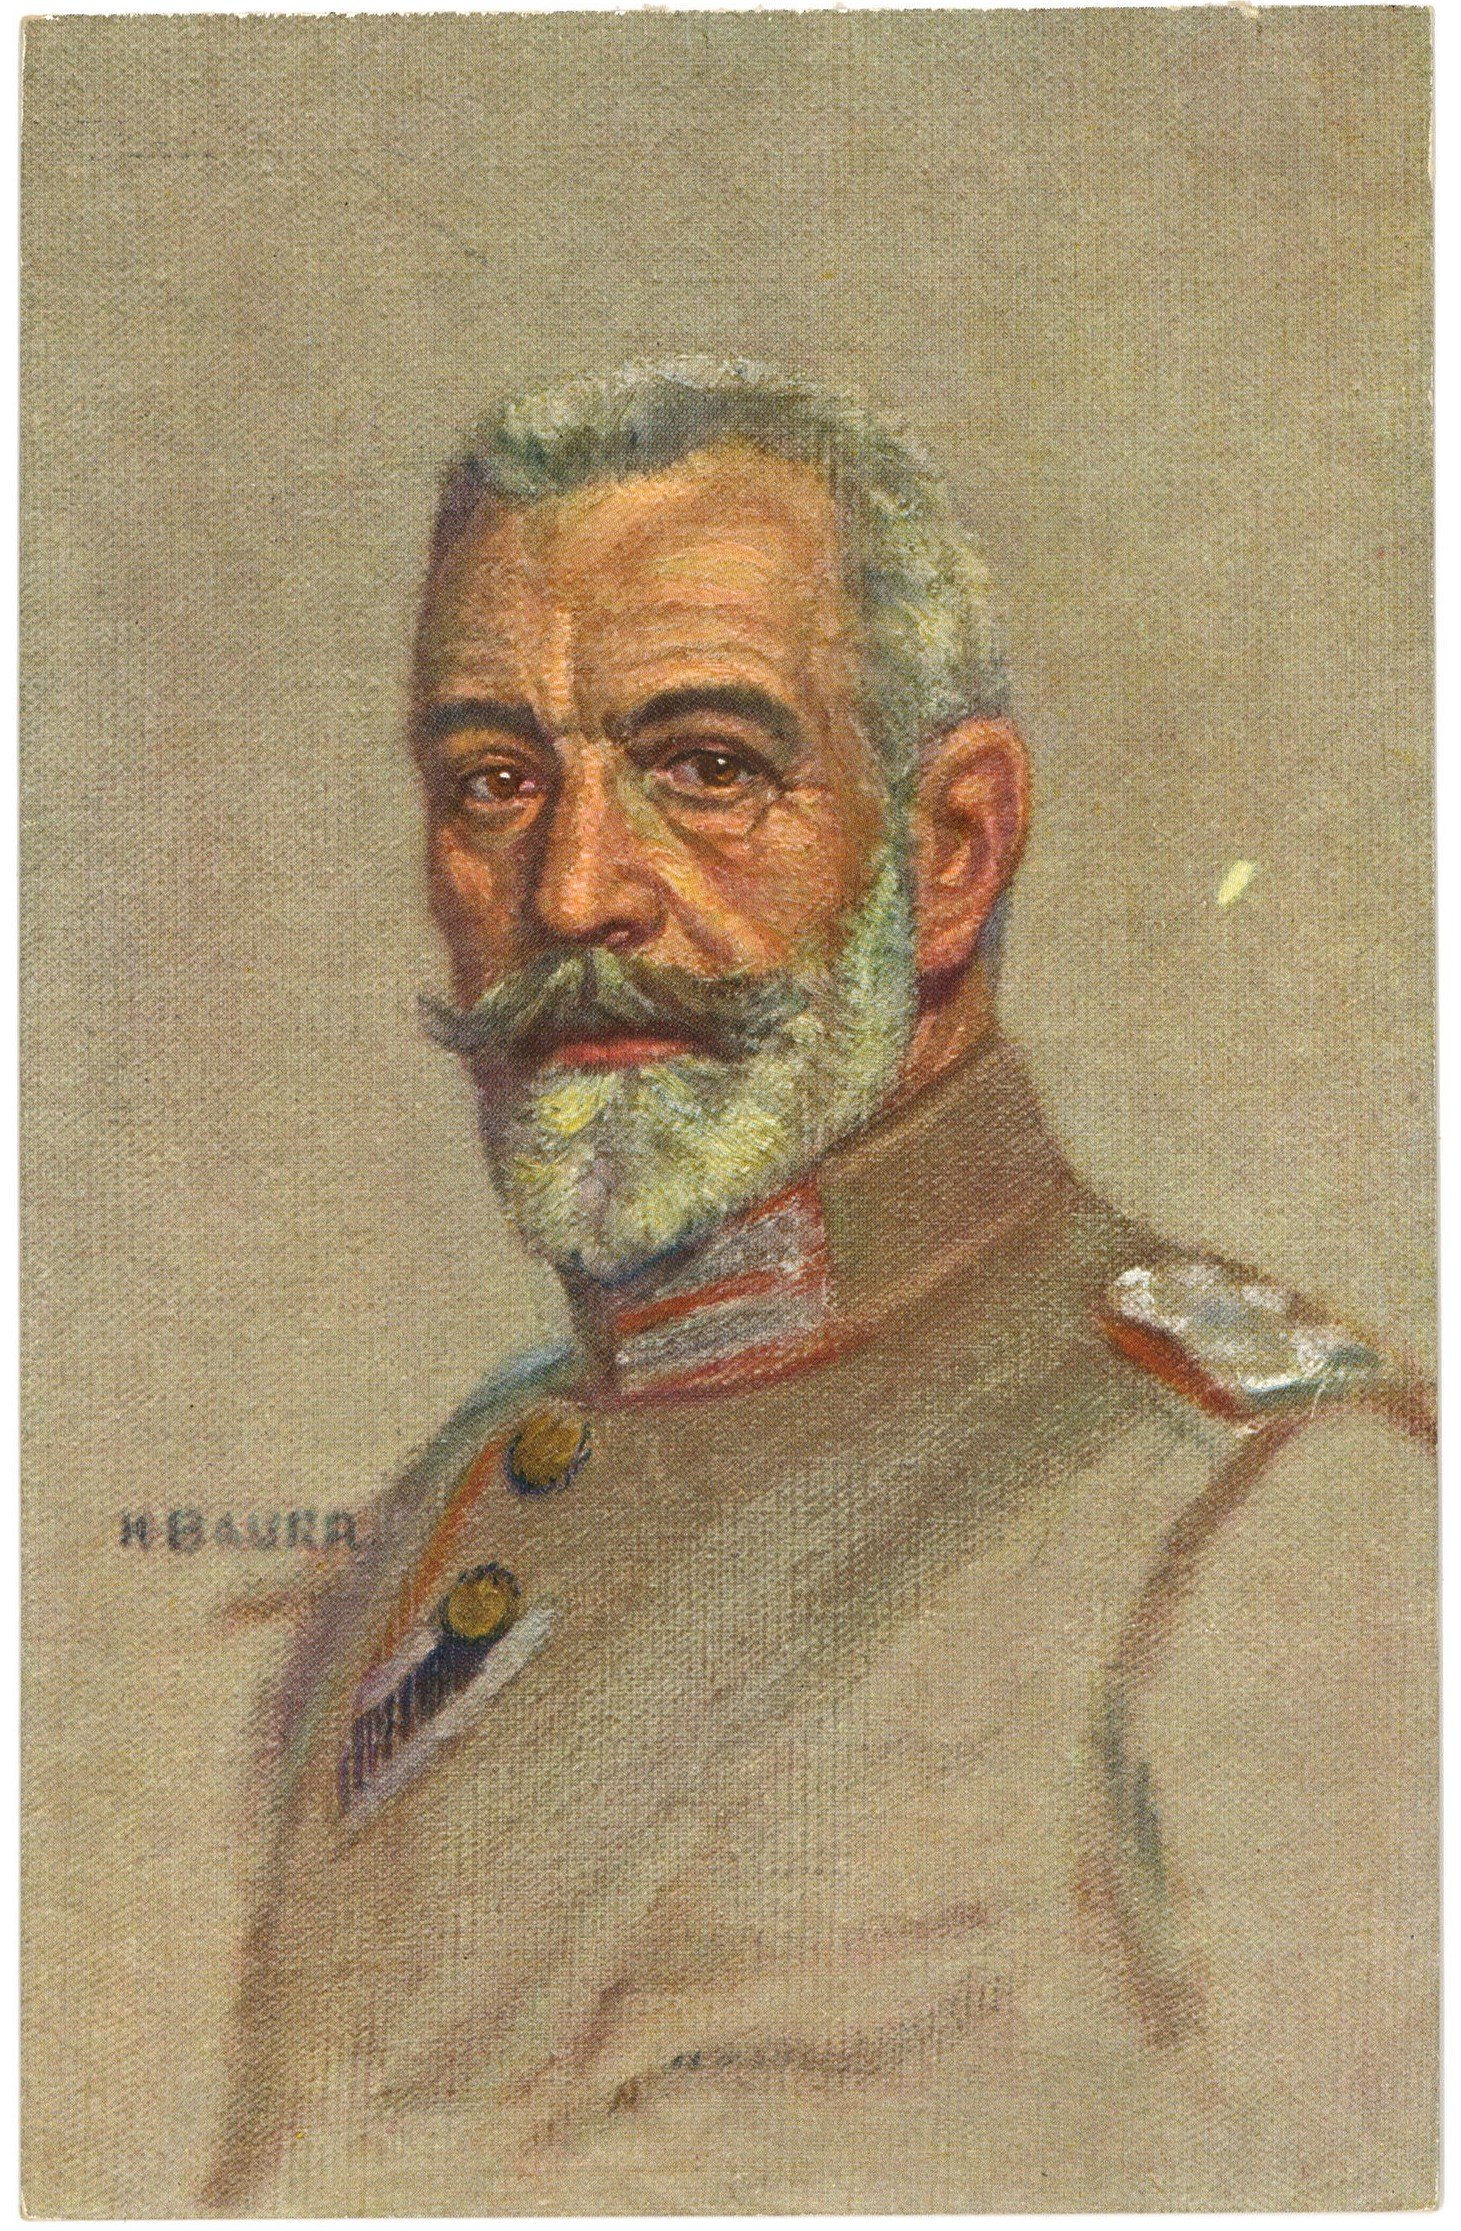 Bethmann Hollweg, Theobald (1856–1921), Reichskanzler (Gemälde von Karl Bauer) (Landesgeschichtliche Vereinigung für die Mark Brandenburg e.V. CC BY)